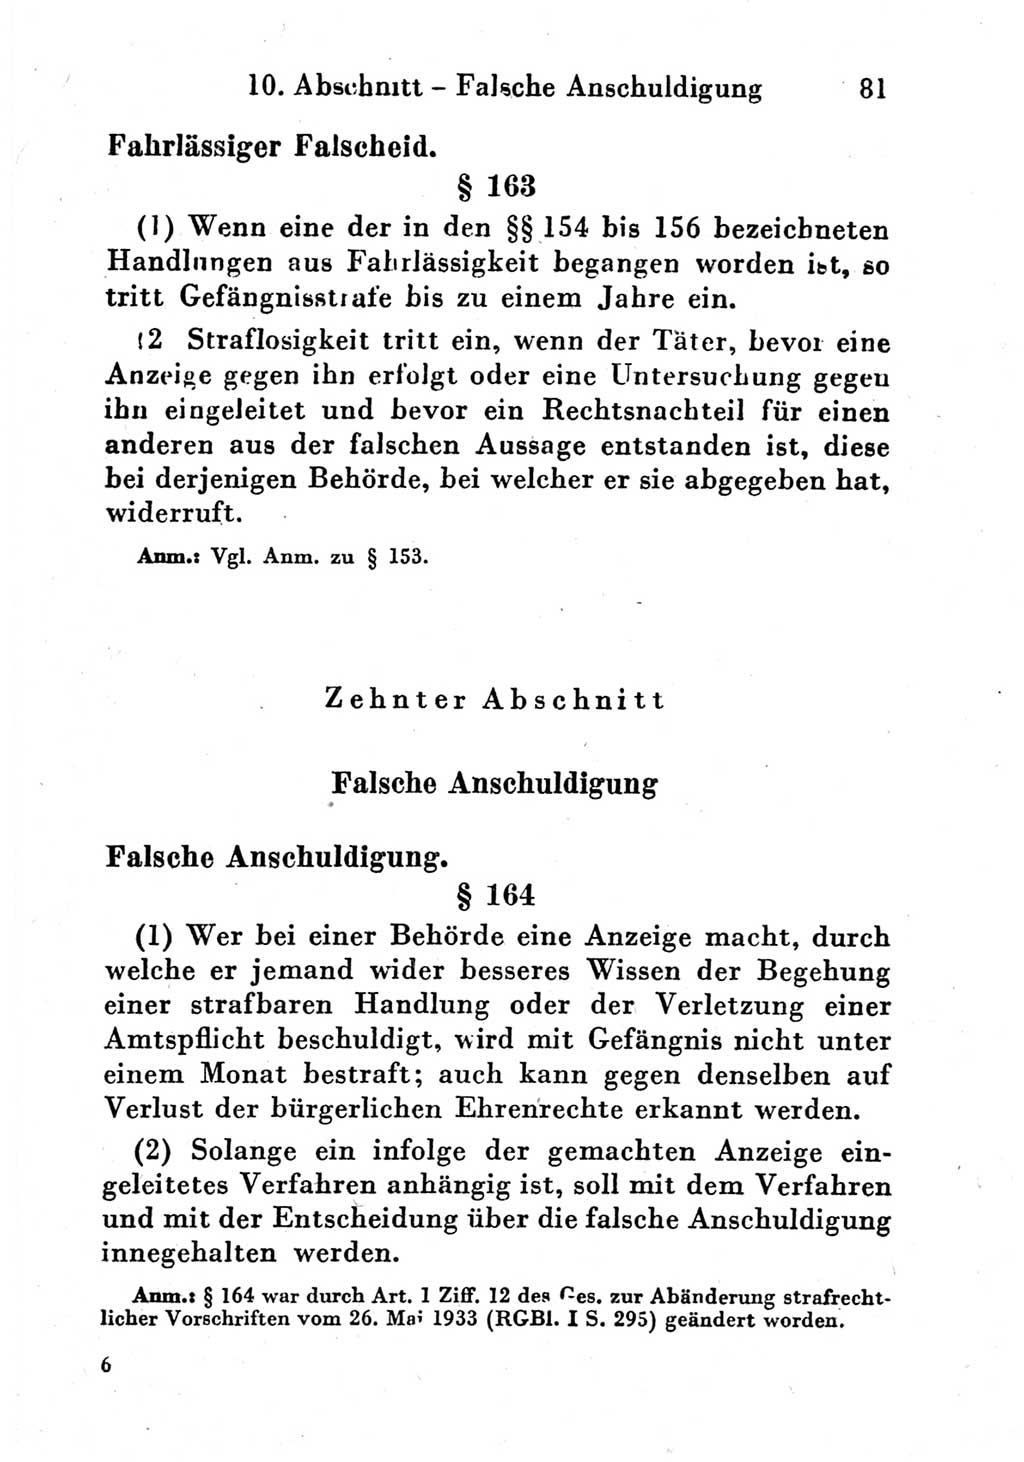 Strafgesetzbuch (StGB) und andere Strafgesetze [Deutsche Demokratische Republik (DDR)] 1951, Seite 81 (StGB Strafges. DDR 1951, S. 81)